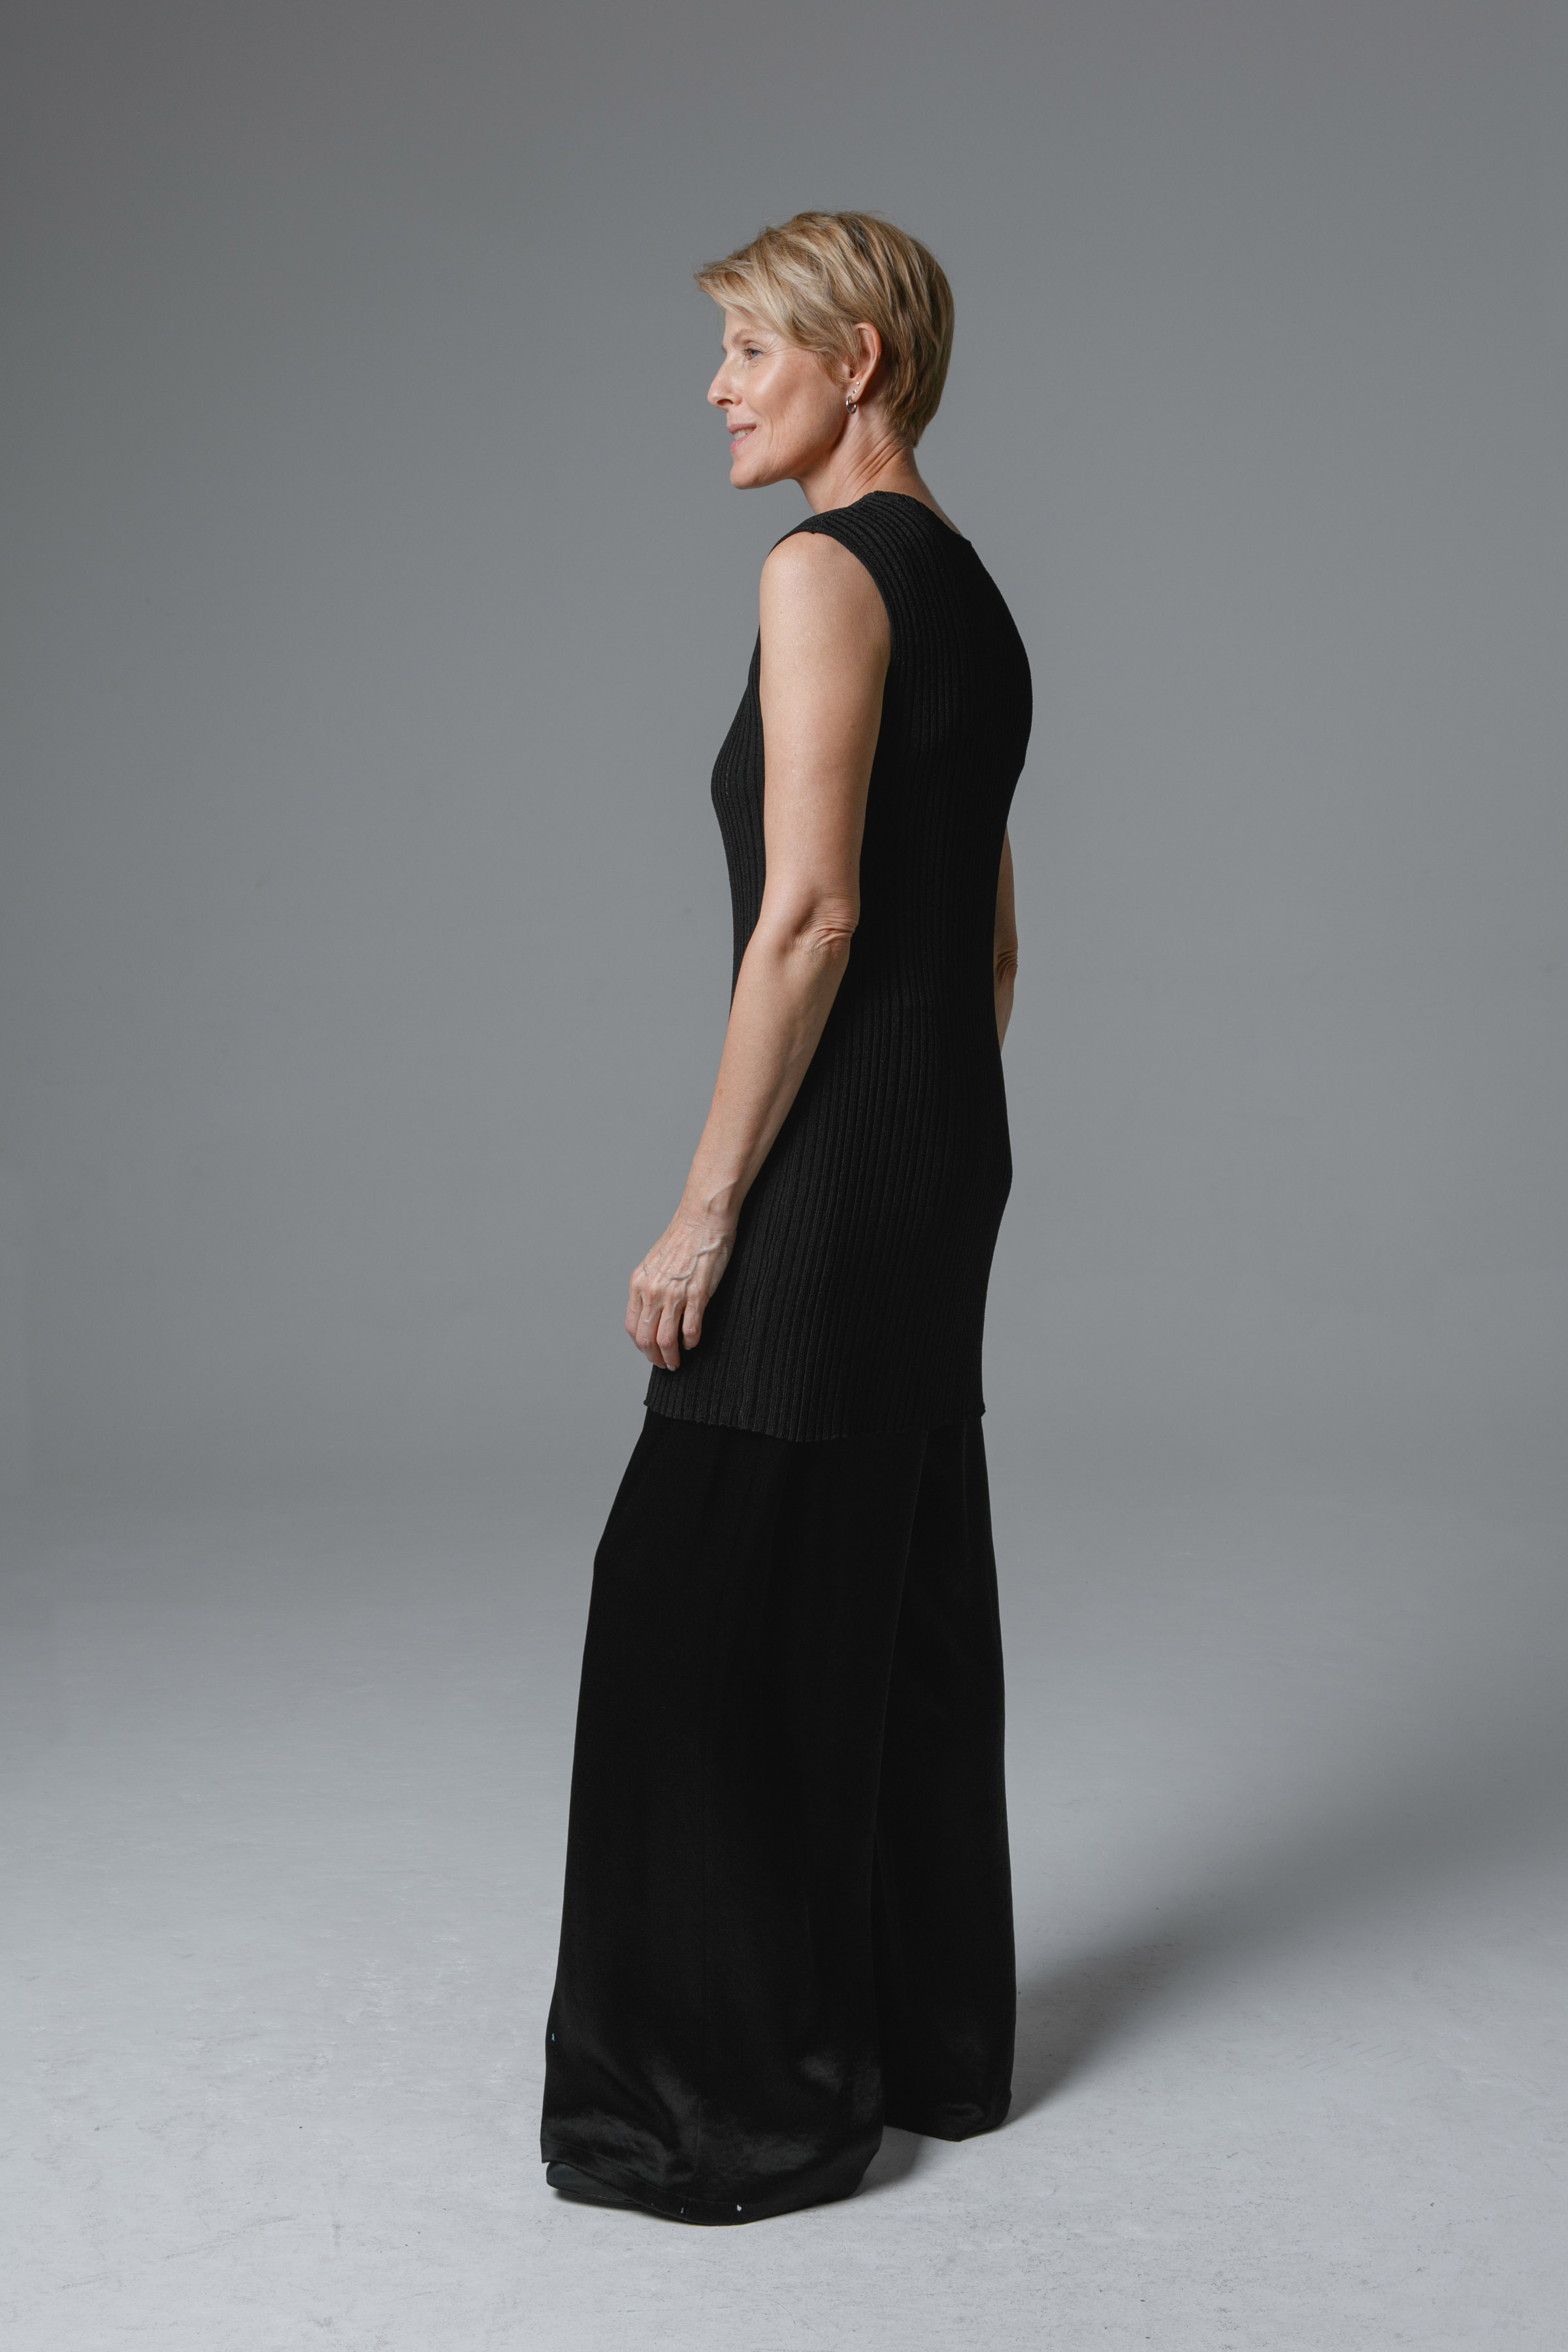 Платье Ластичное 00 Черный (noir) от Lesel (Лесель)! Заказывайте по ✆ 8 (800) 777 02 37